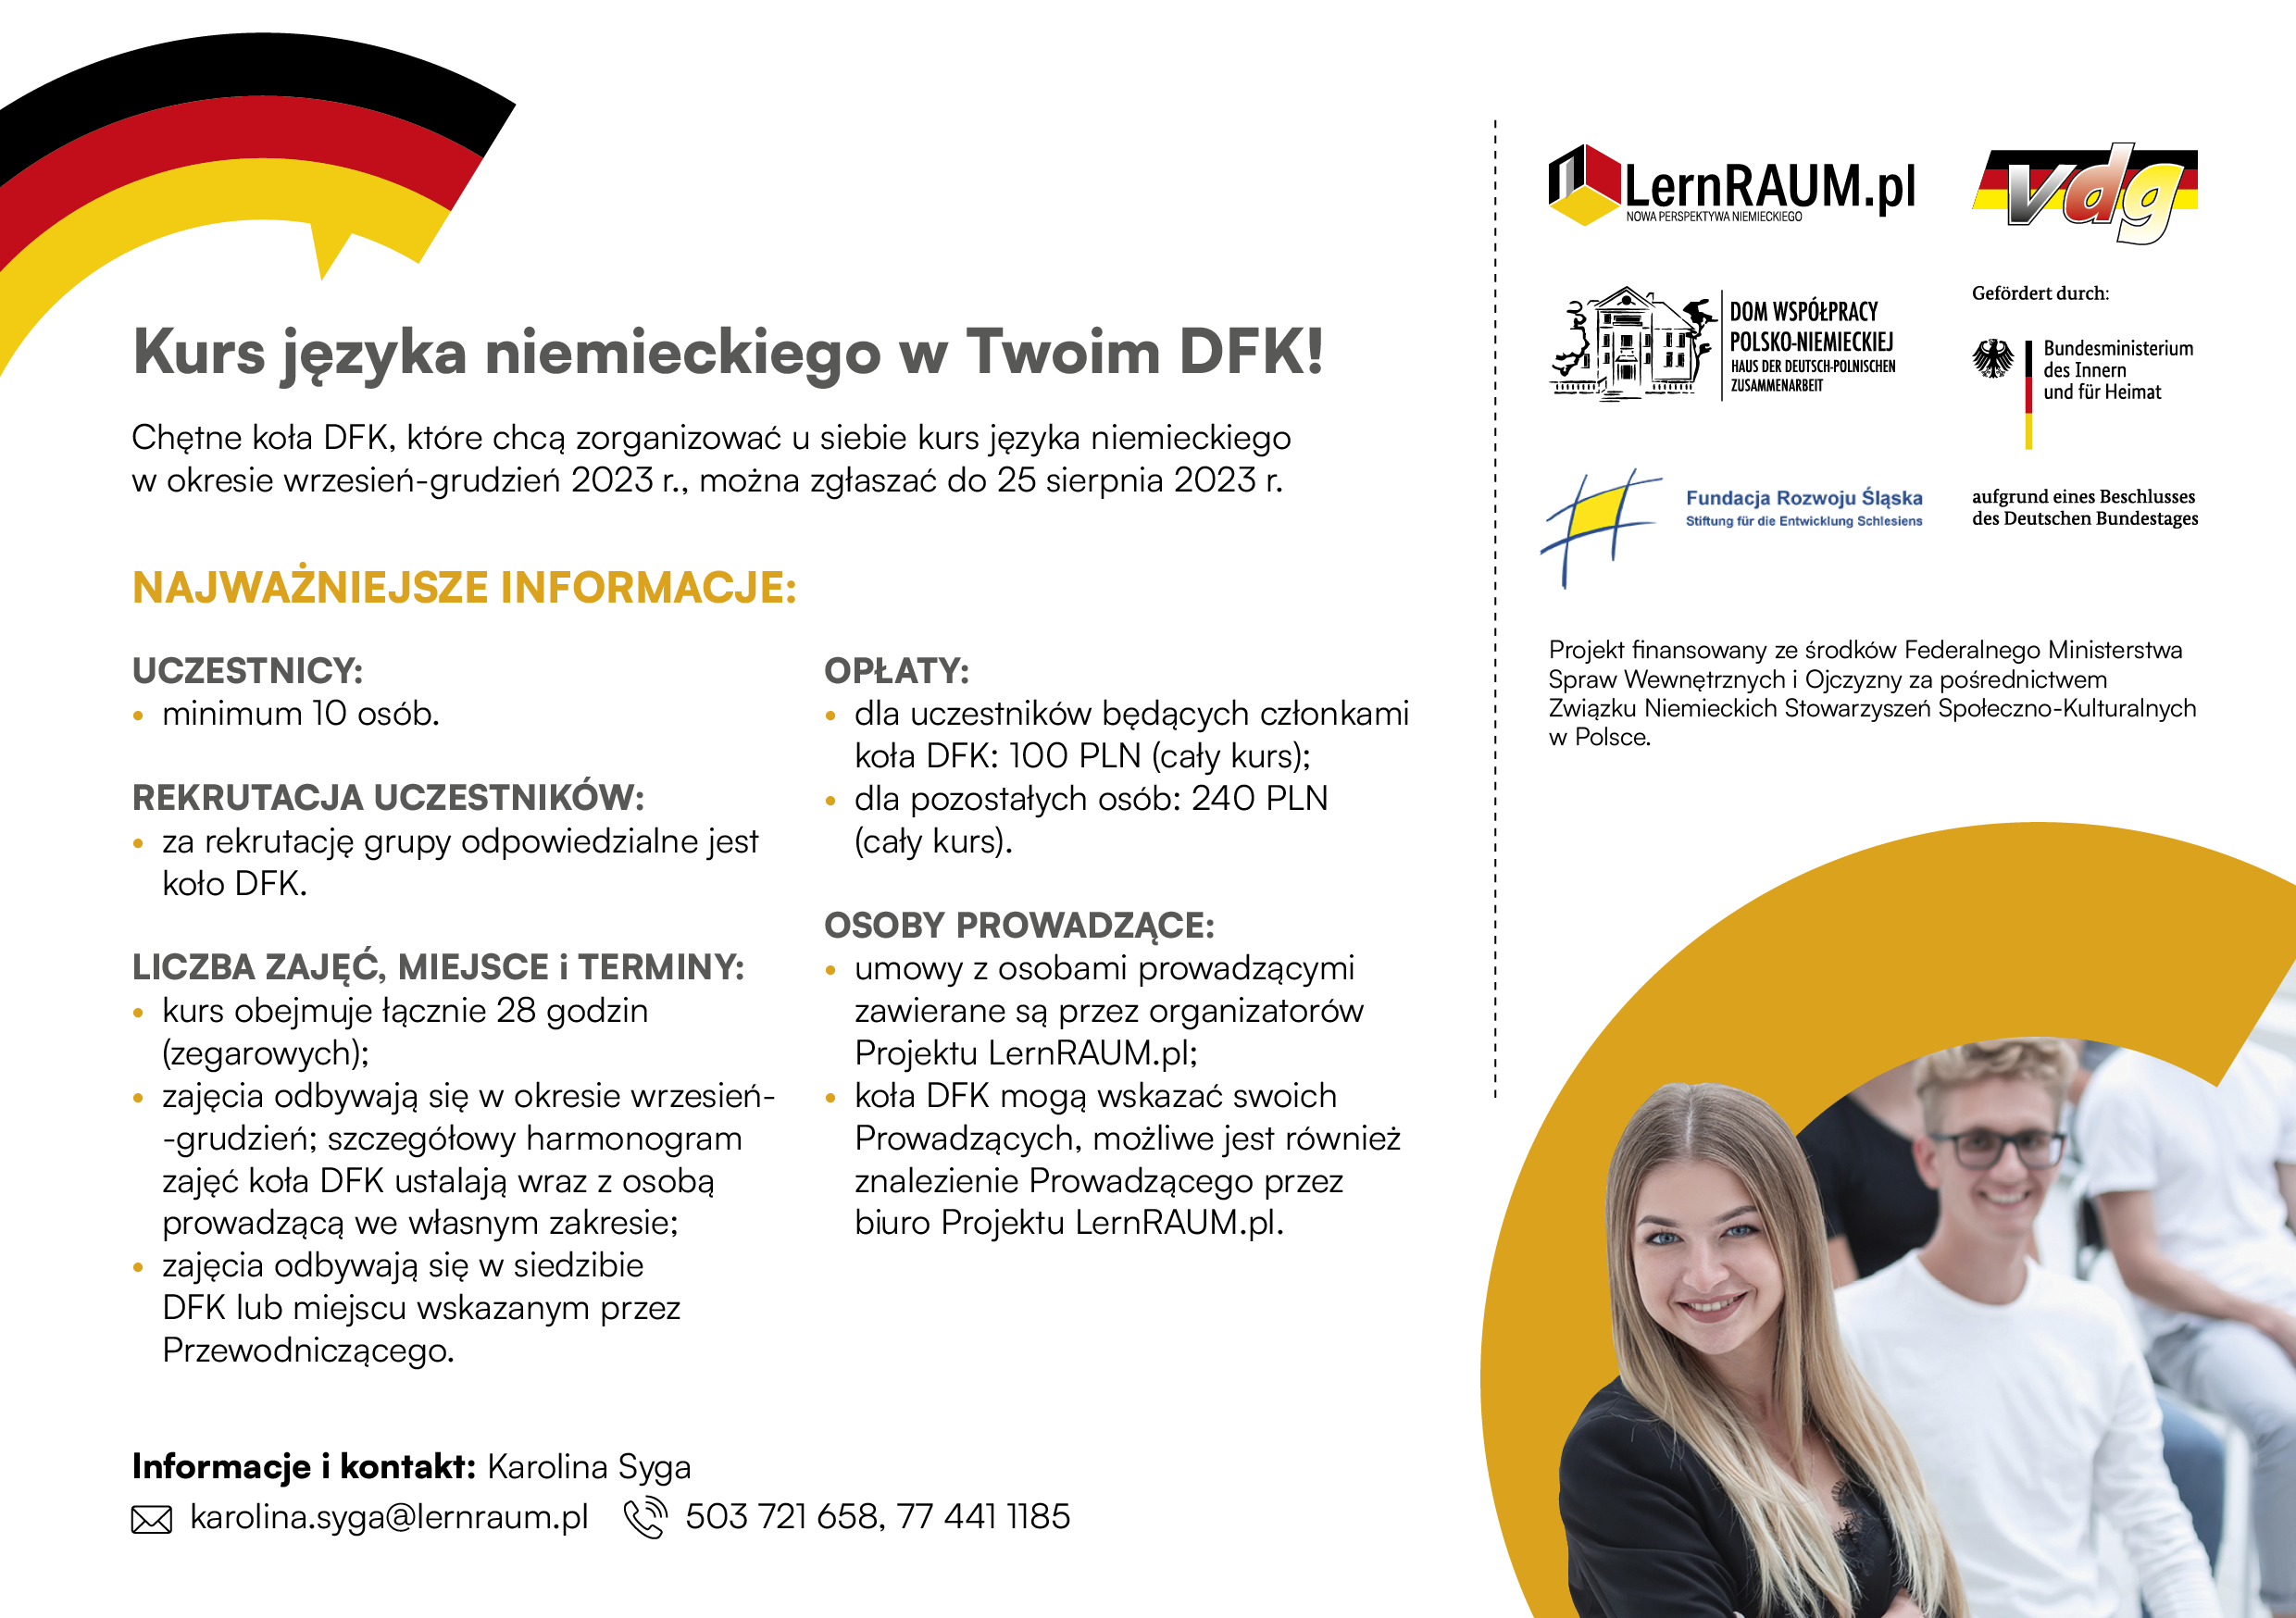 Organisieren Sie einen Deutschkurs in Ihrem DFK!